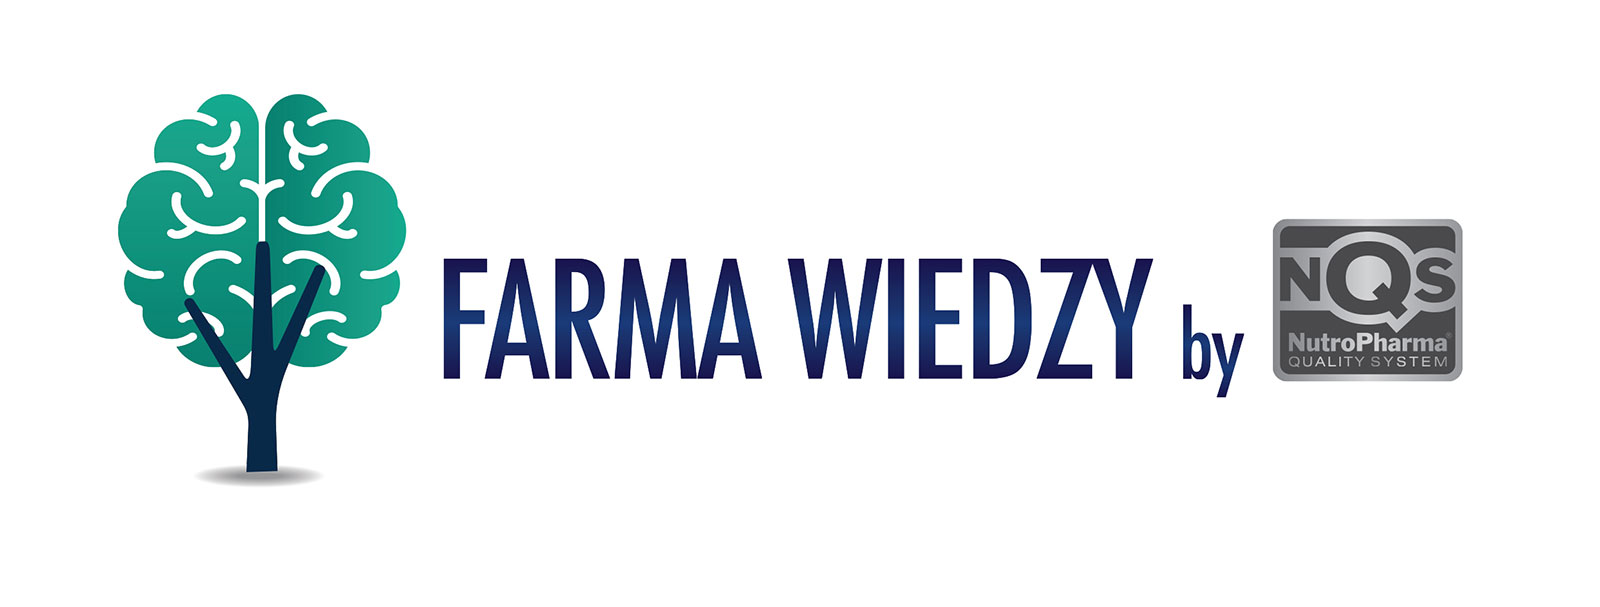 www.farmawiedzy.pl